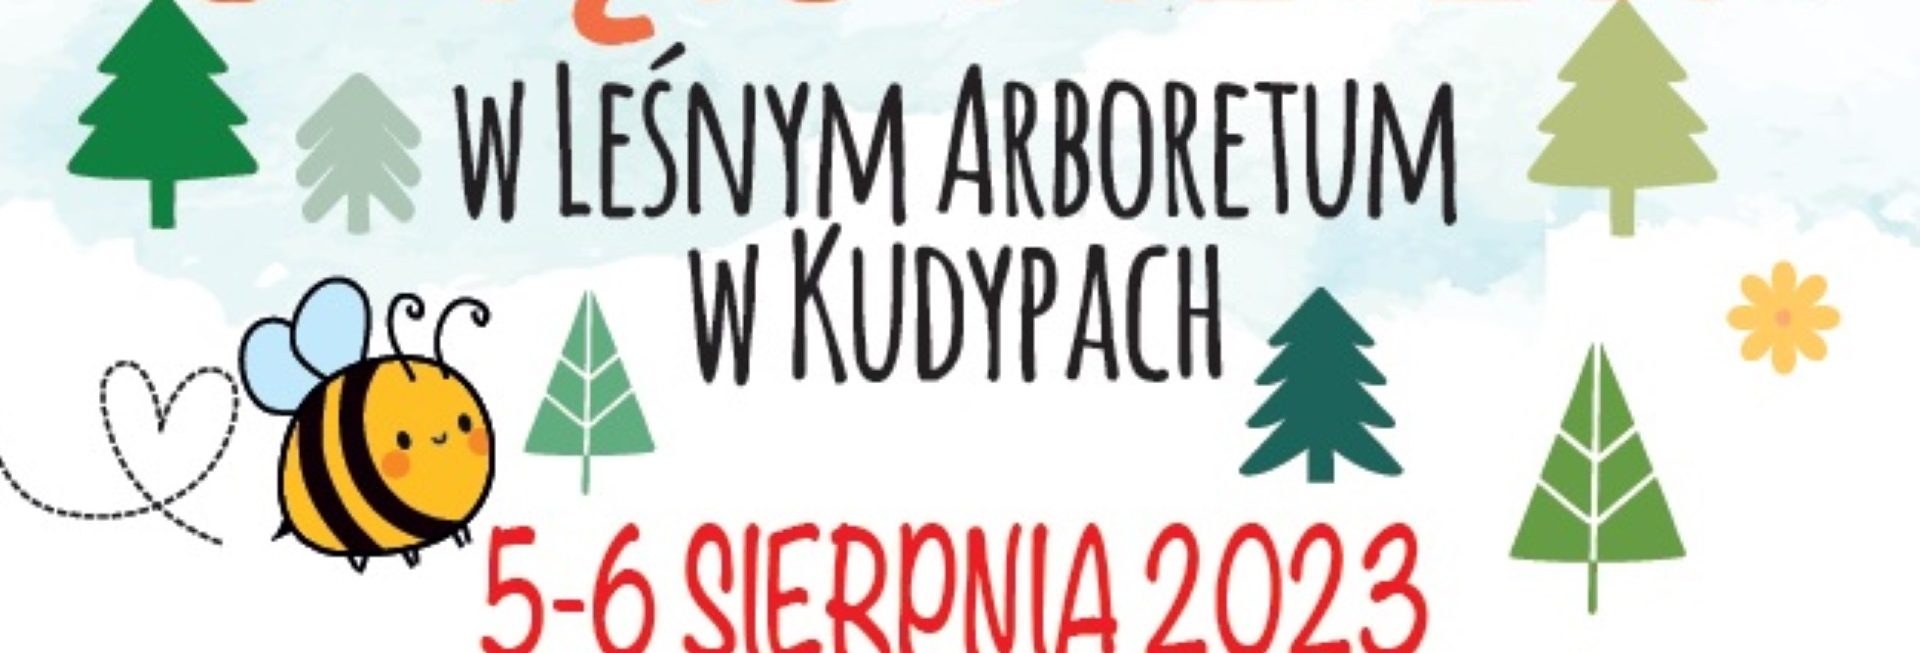 Plakat zapraszający w dniach 5-6 sierpnia 2023 r. do Nadleśnictwa Kudypy na Święto Pszczół w Leśnym Arboretum w Kudypach 2023.